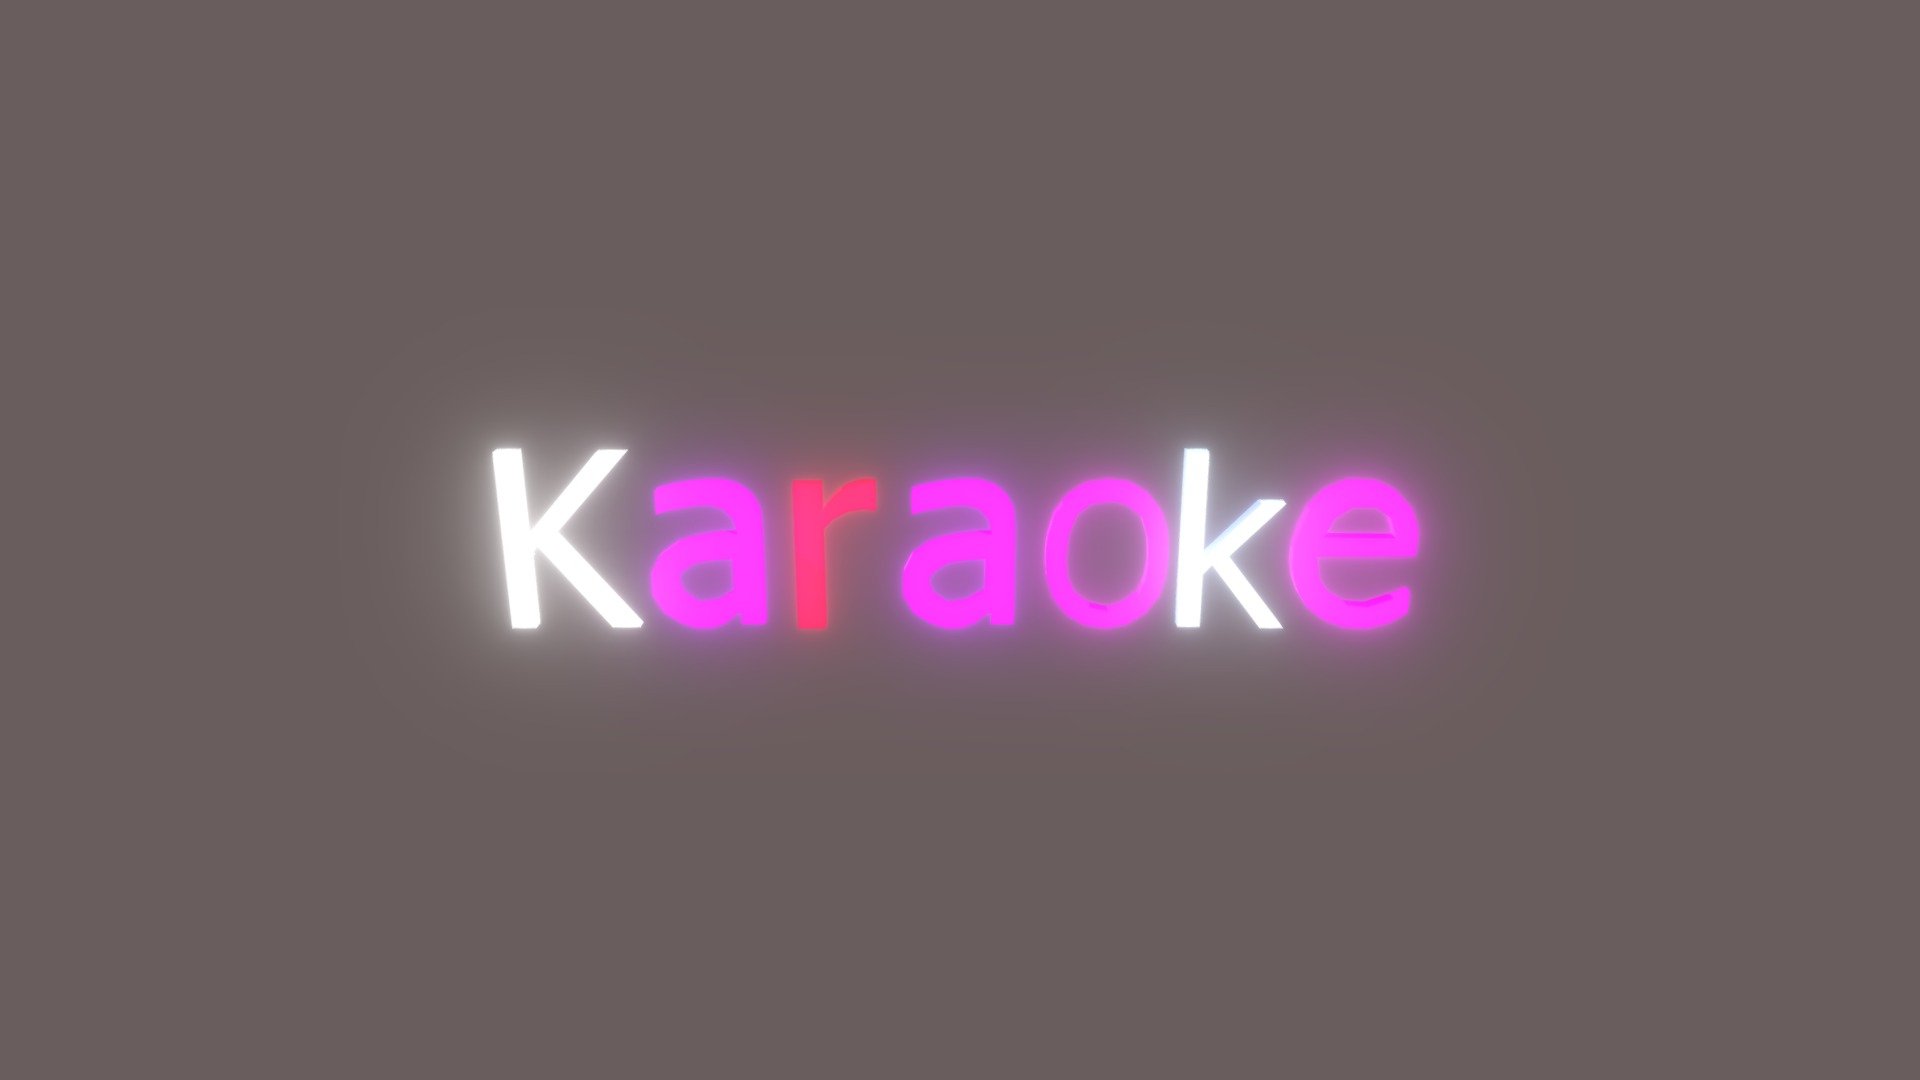 Karaoke-GLOW
glow test for altspace - Karaoke-GLOW - 3D model by FD-paffie 3d model